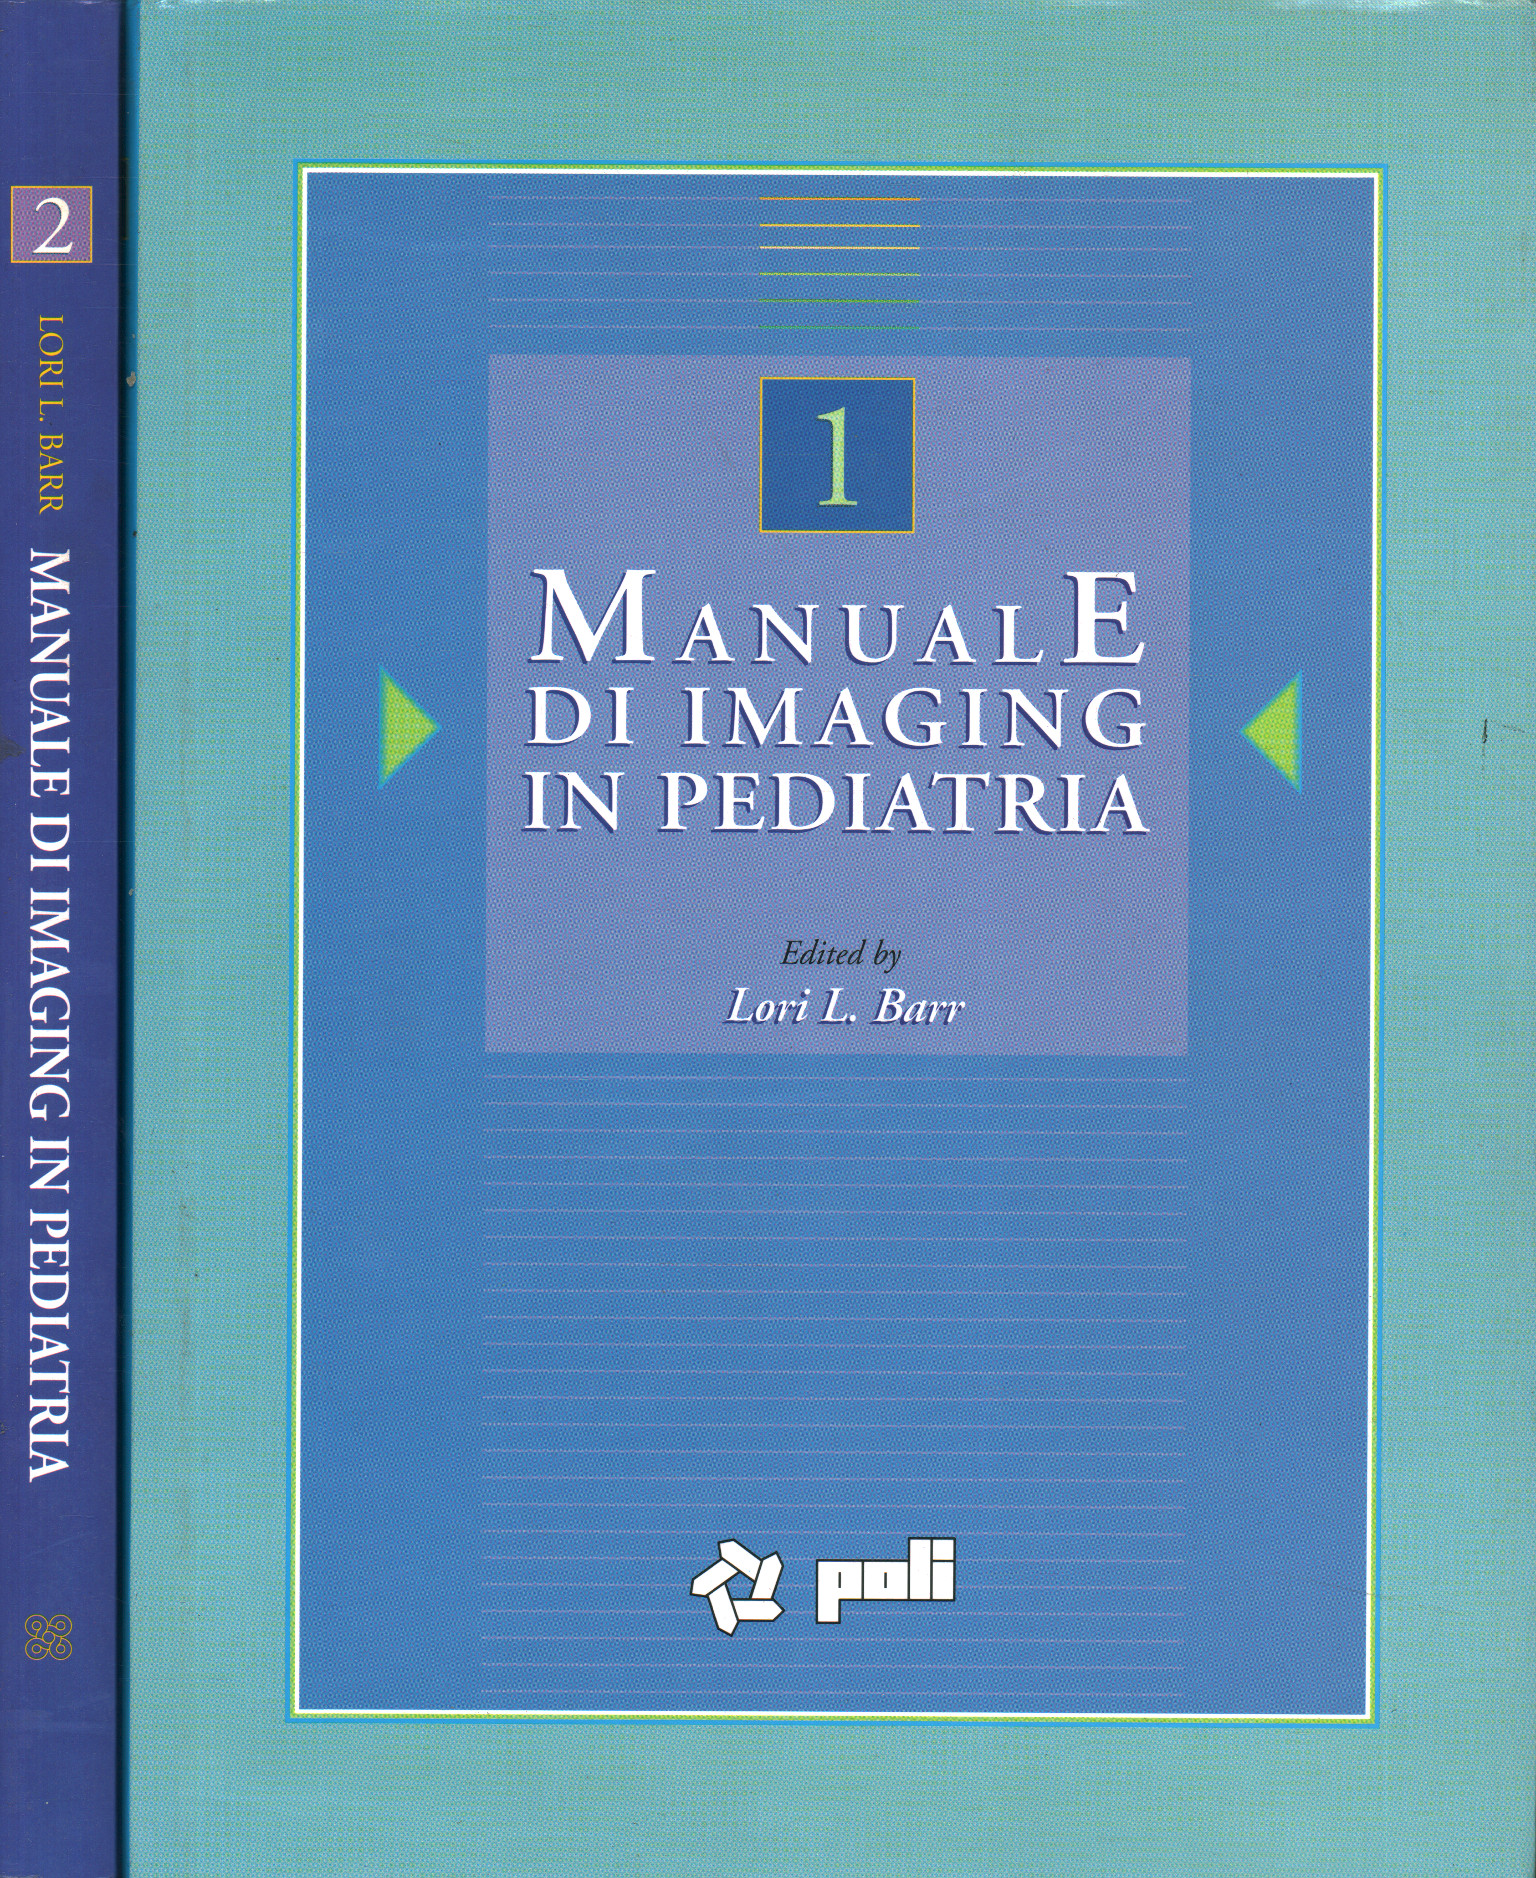 Manual de imágenes pediátricas (2, Manual de imágenes pediátricas (2 vol.)